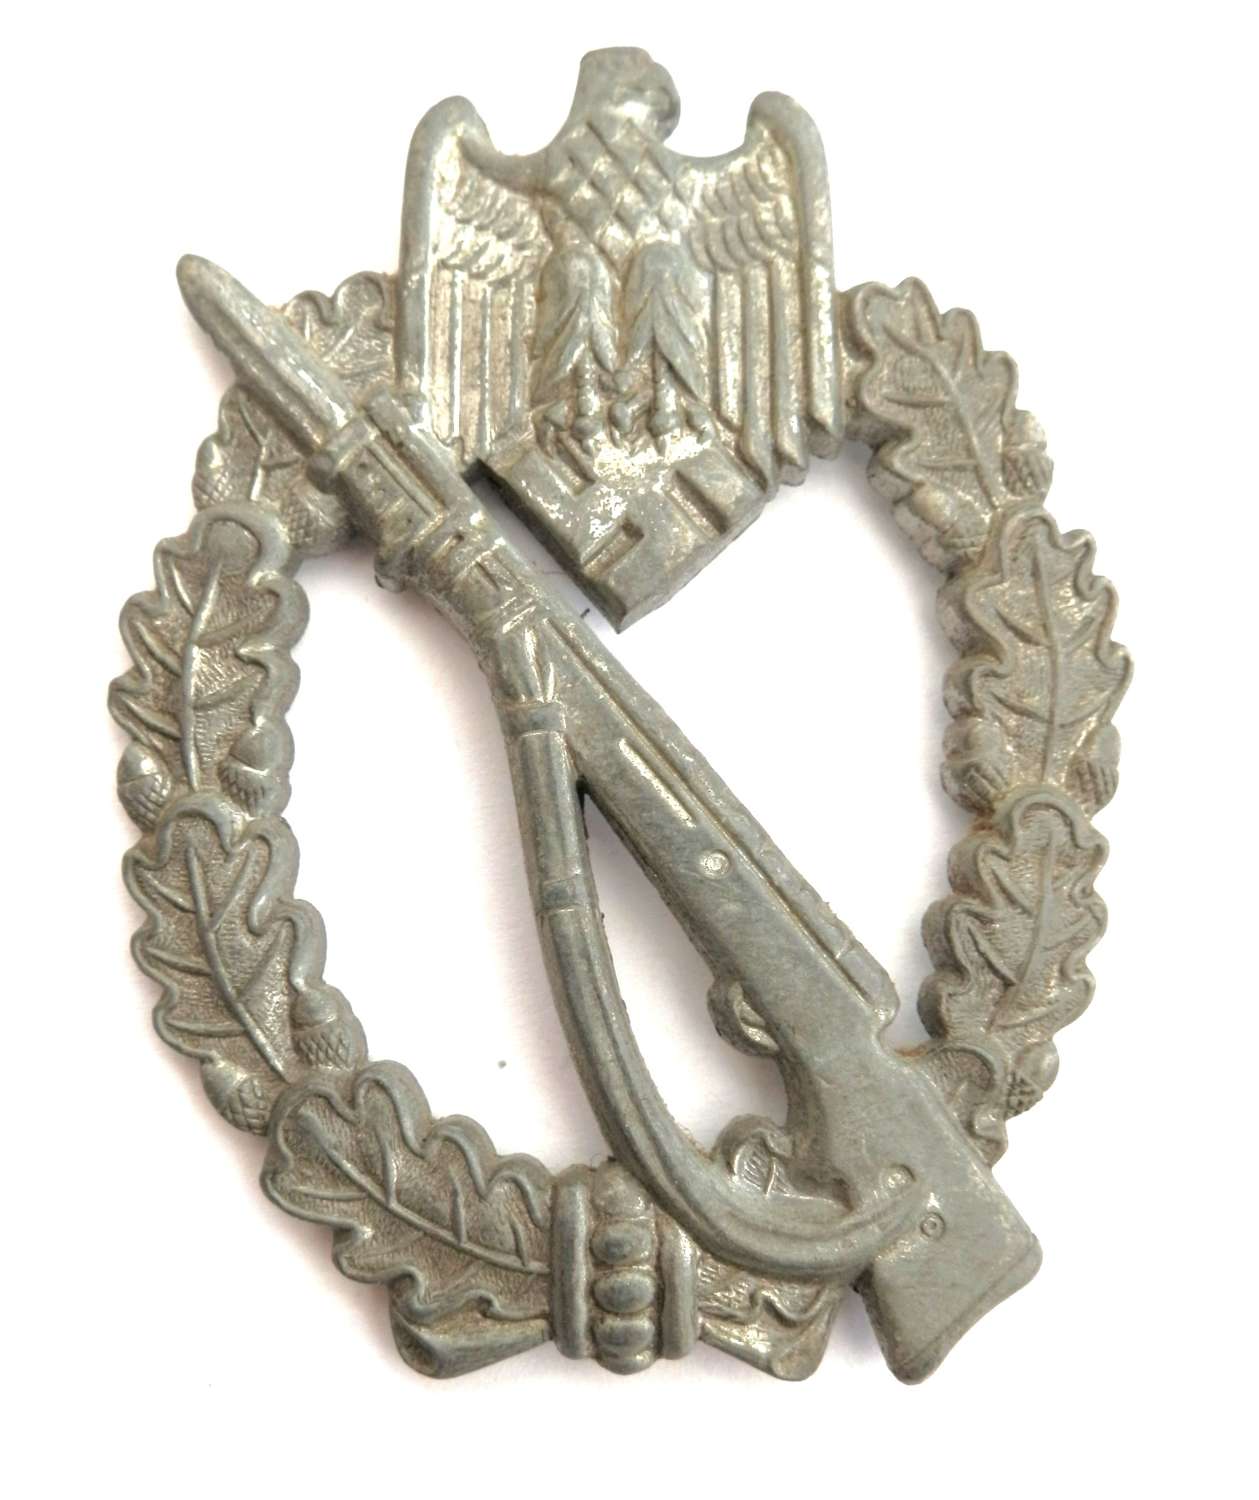 German Infantry Assault Badge. Maker marked M.K.1.